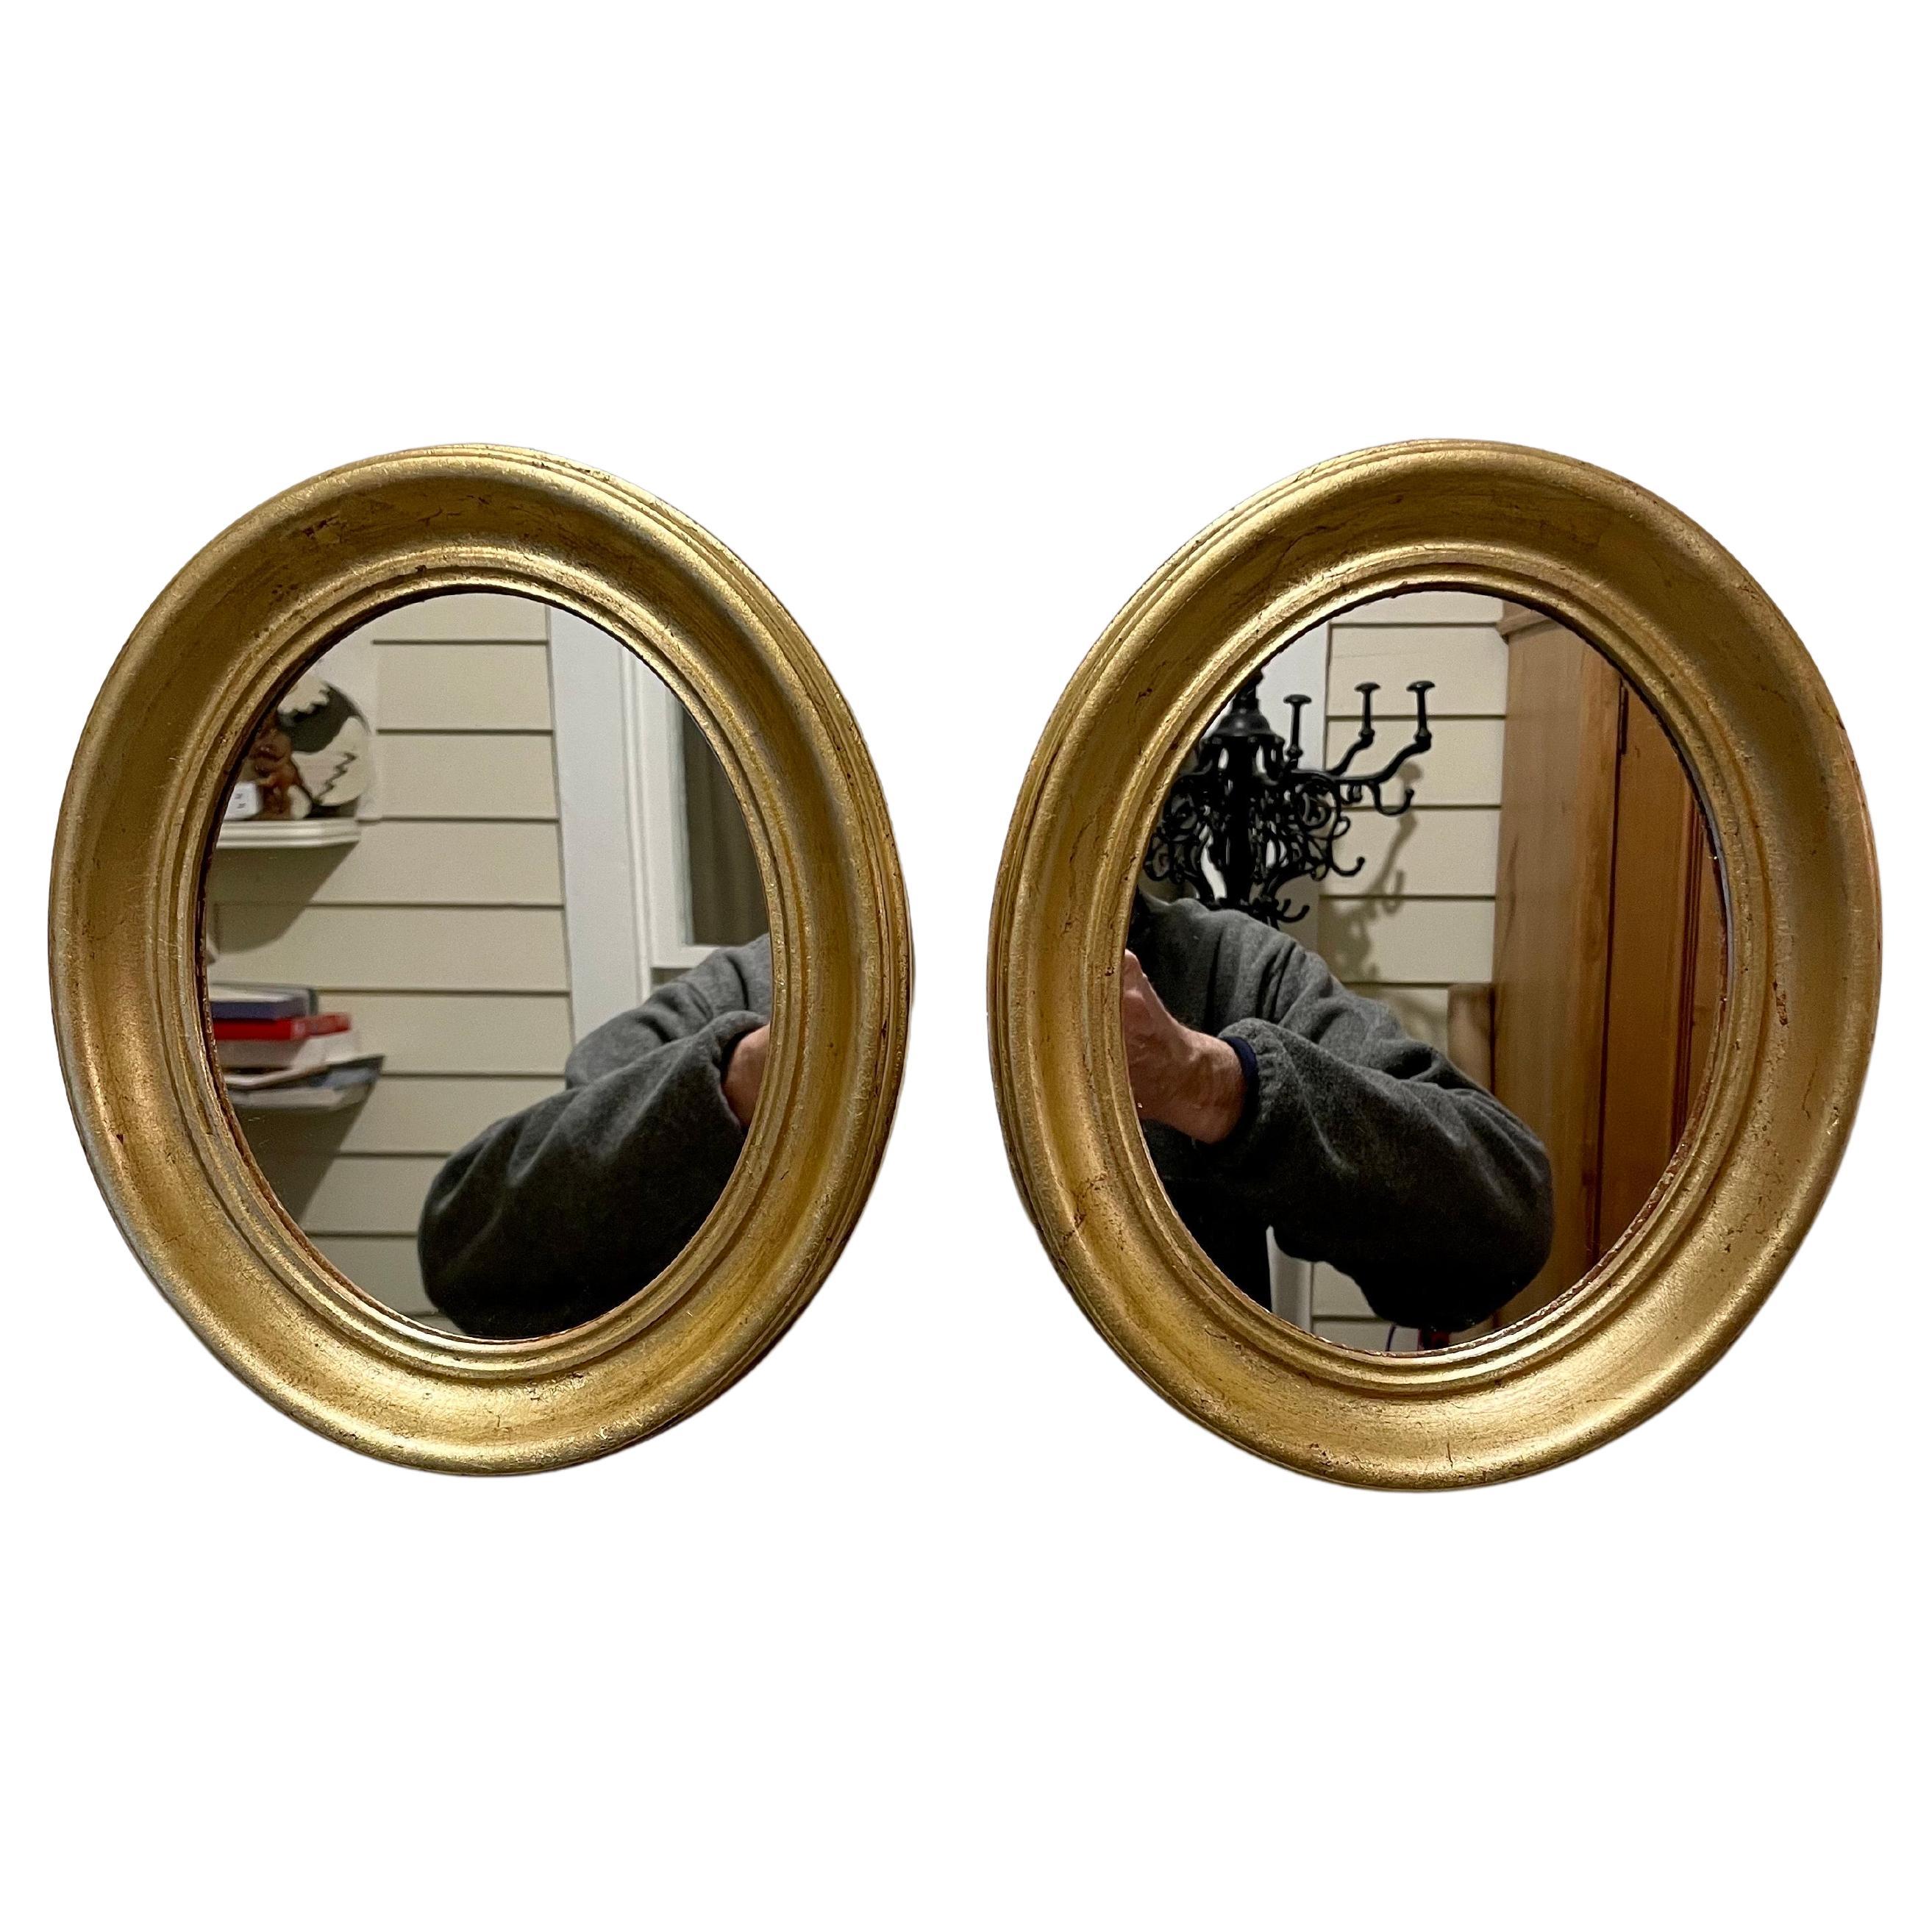 Paire de miroirs ovales italiens dorés. Chaque miroir mesure 11,75